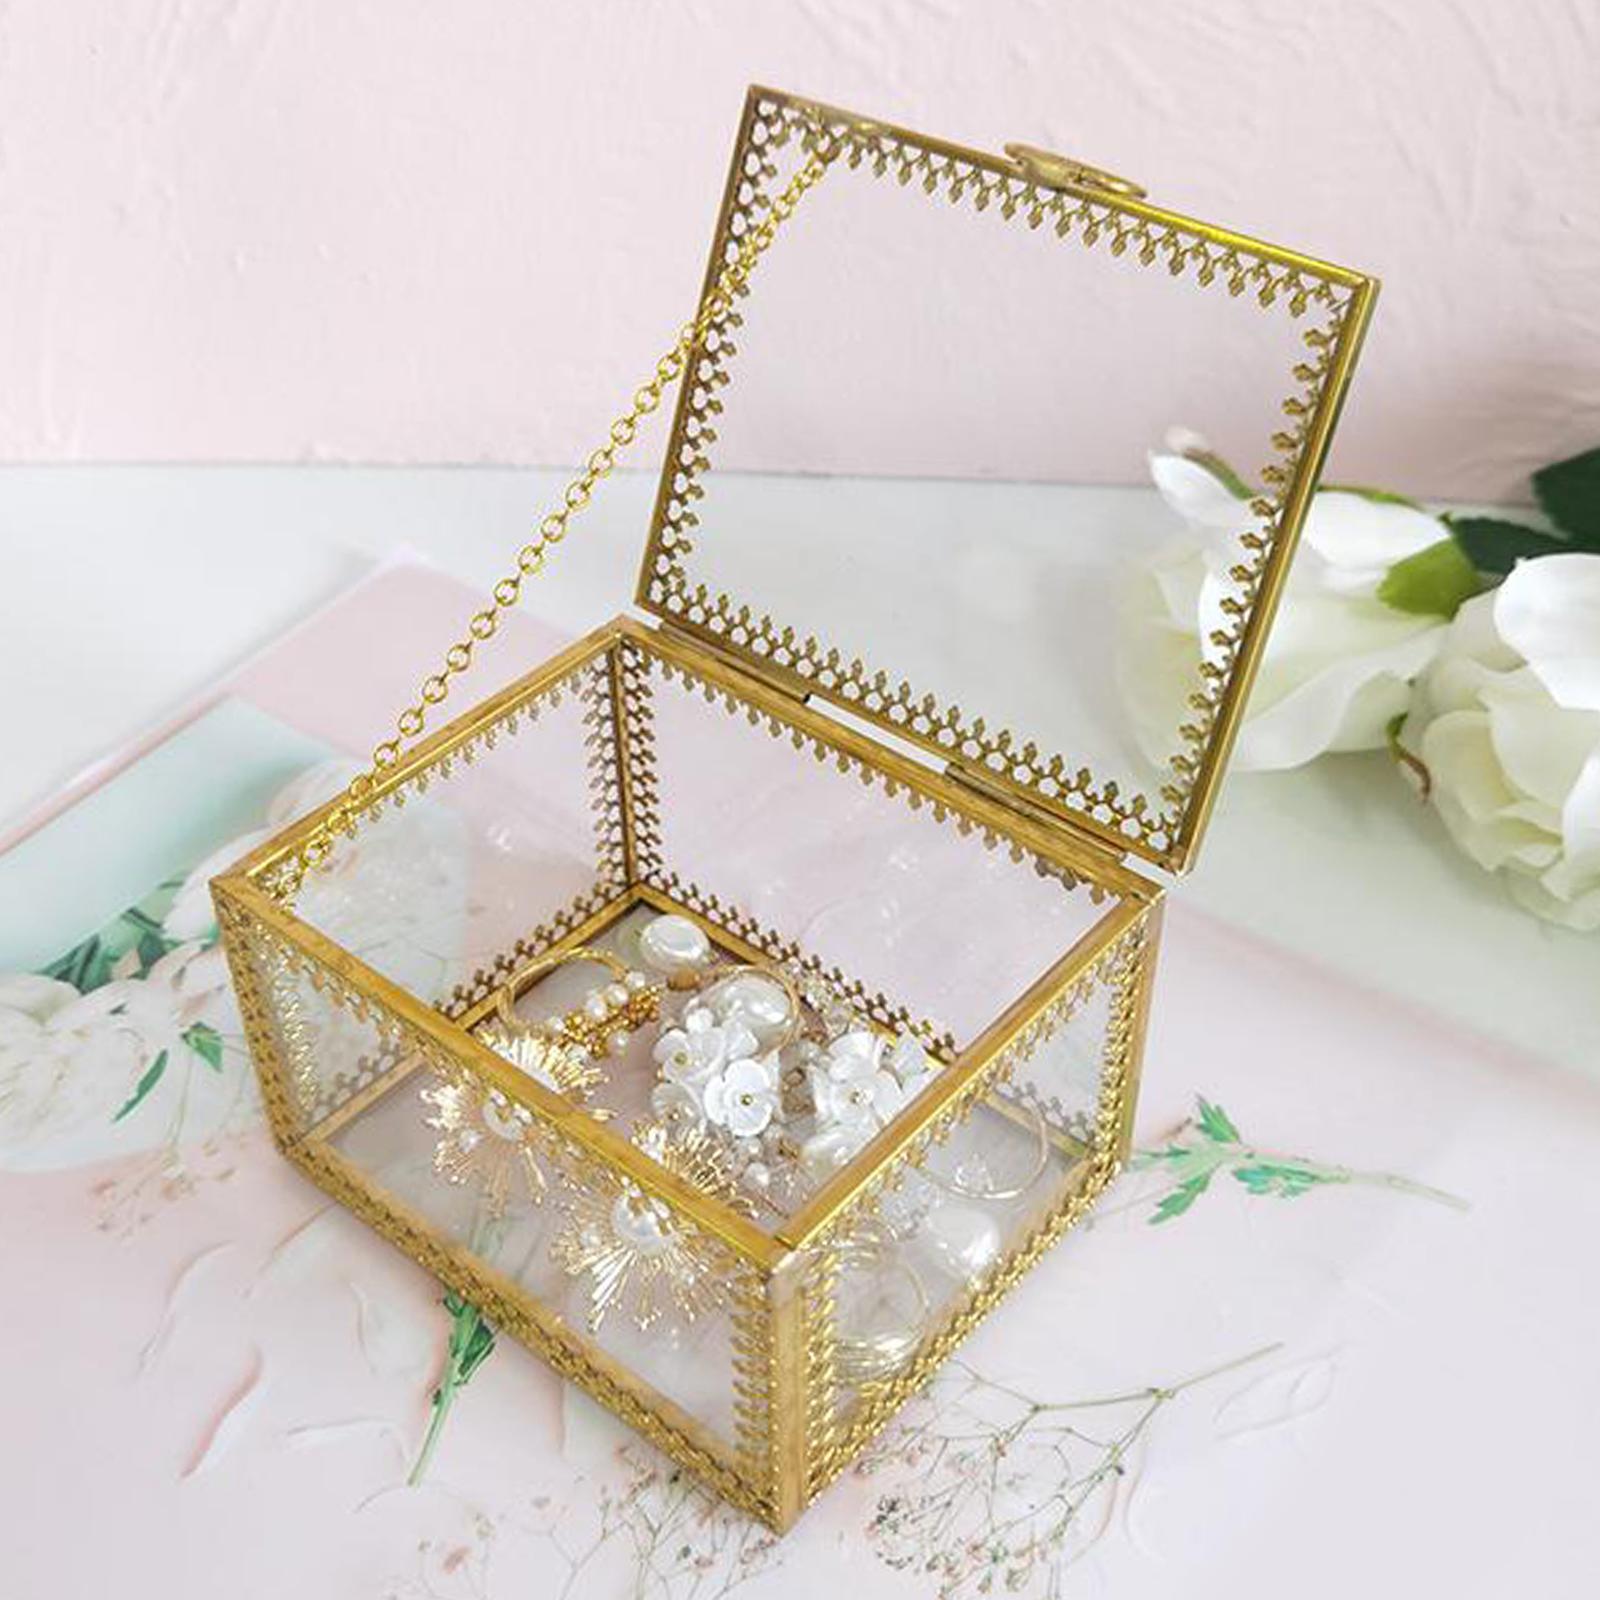 Glass Vintage Jewelry Box Geometric Jewelry Display Organizer Keepsake Box Case